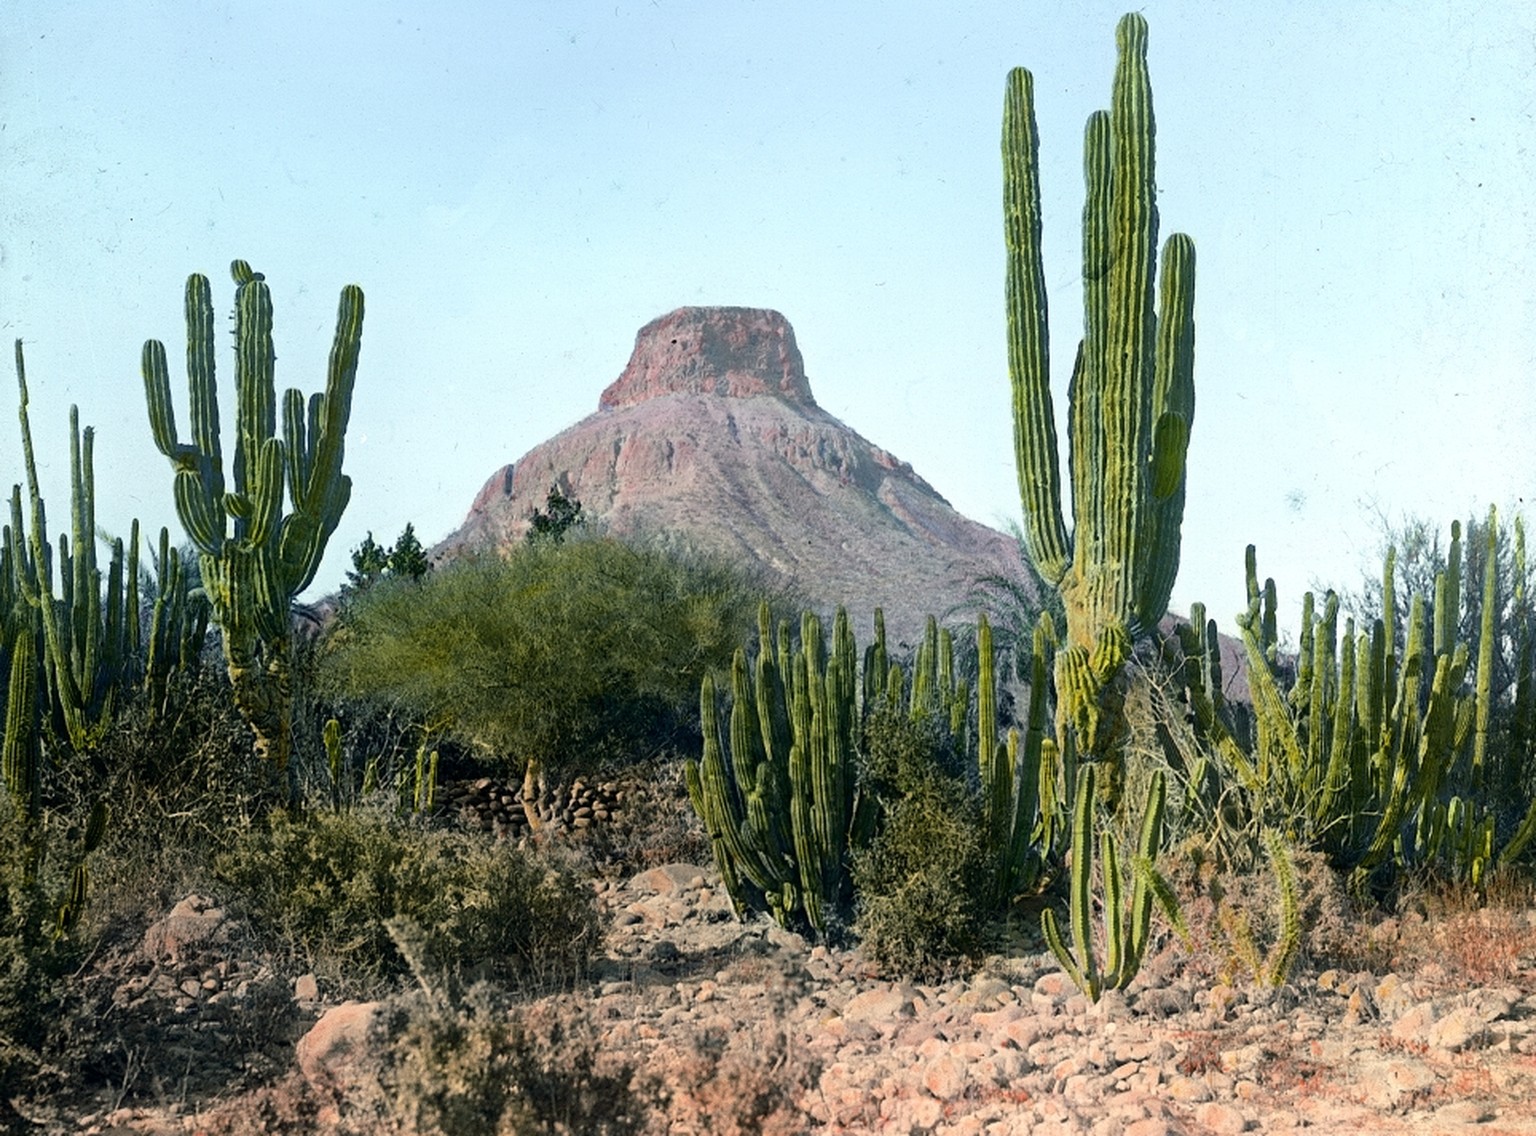 Kakteenlandschaft, im Hintergrund ein Tafelberg,&nbsp;Baja California in Mexiko, 1915.